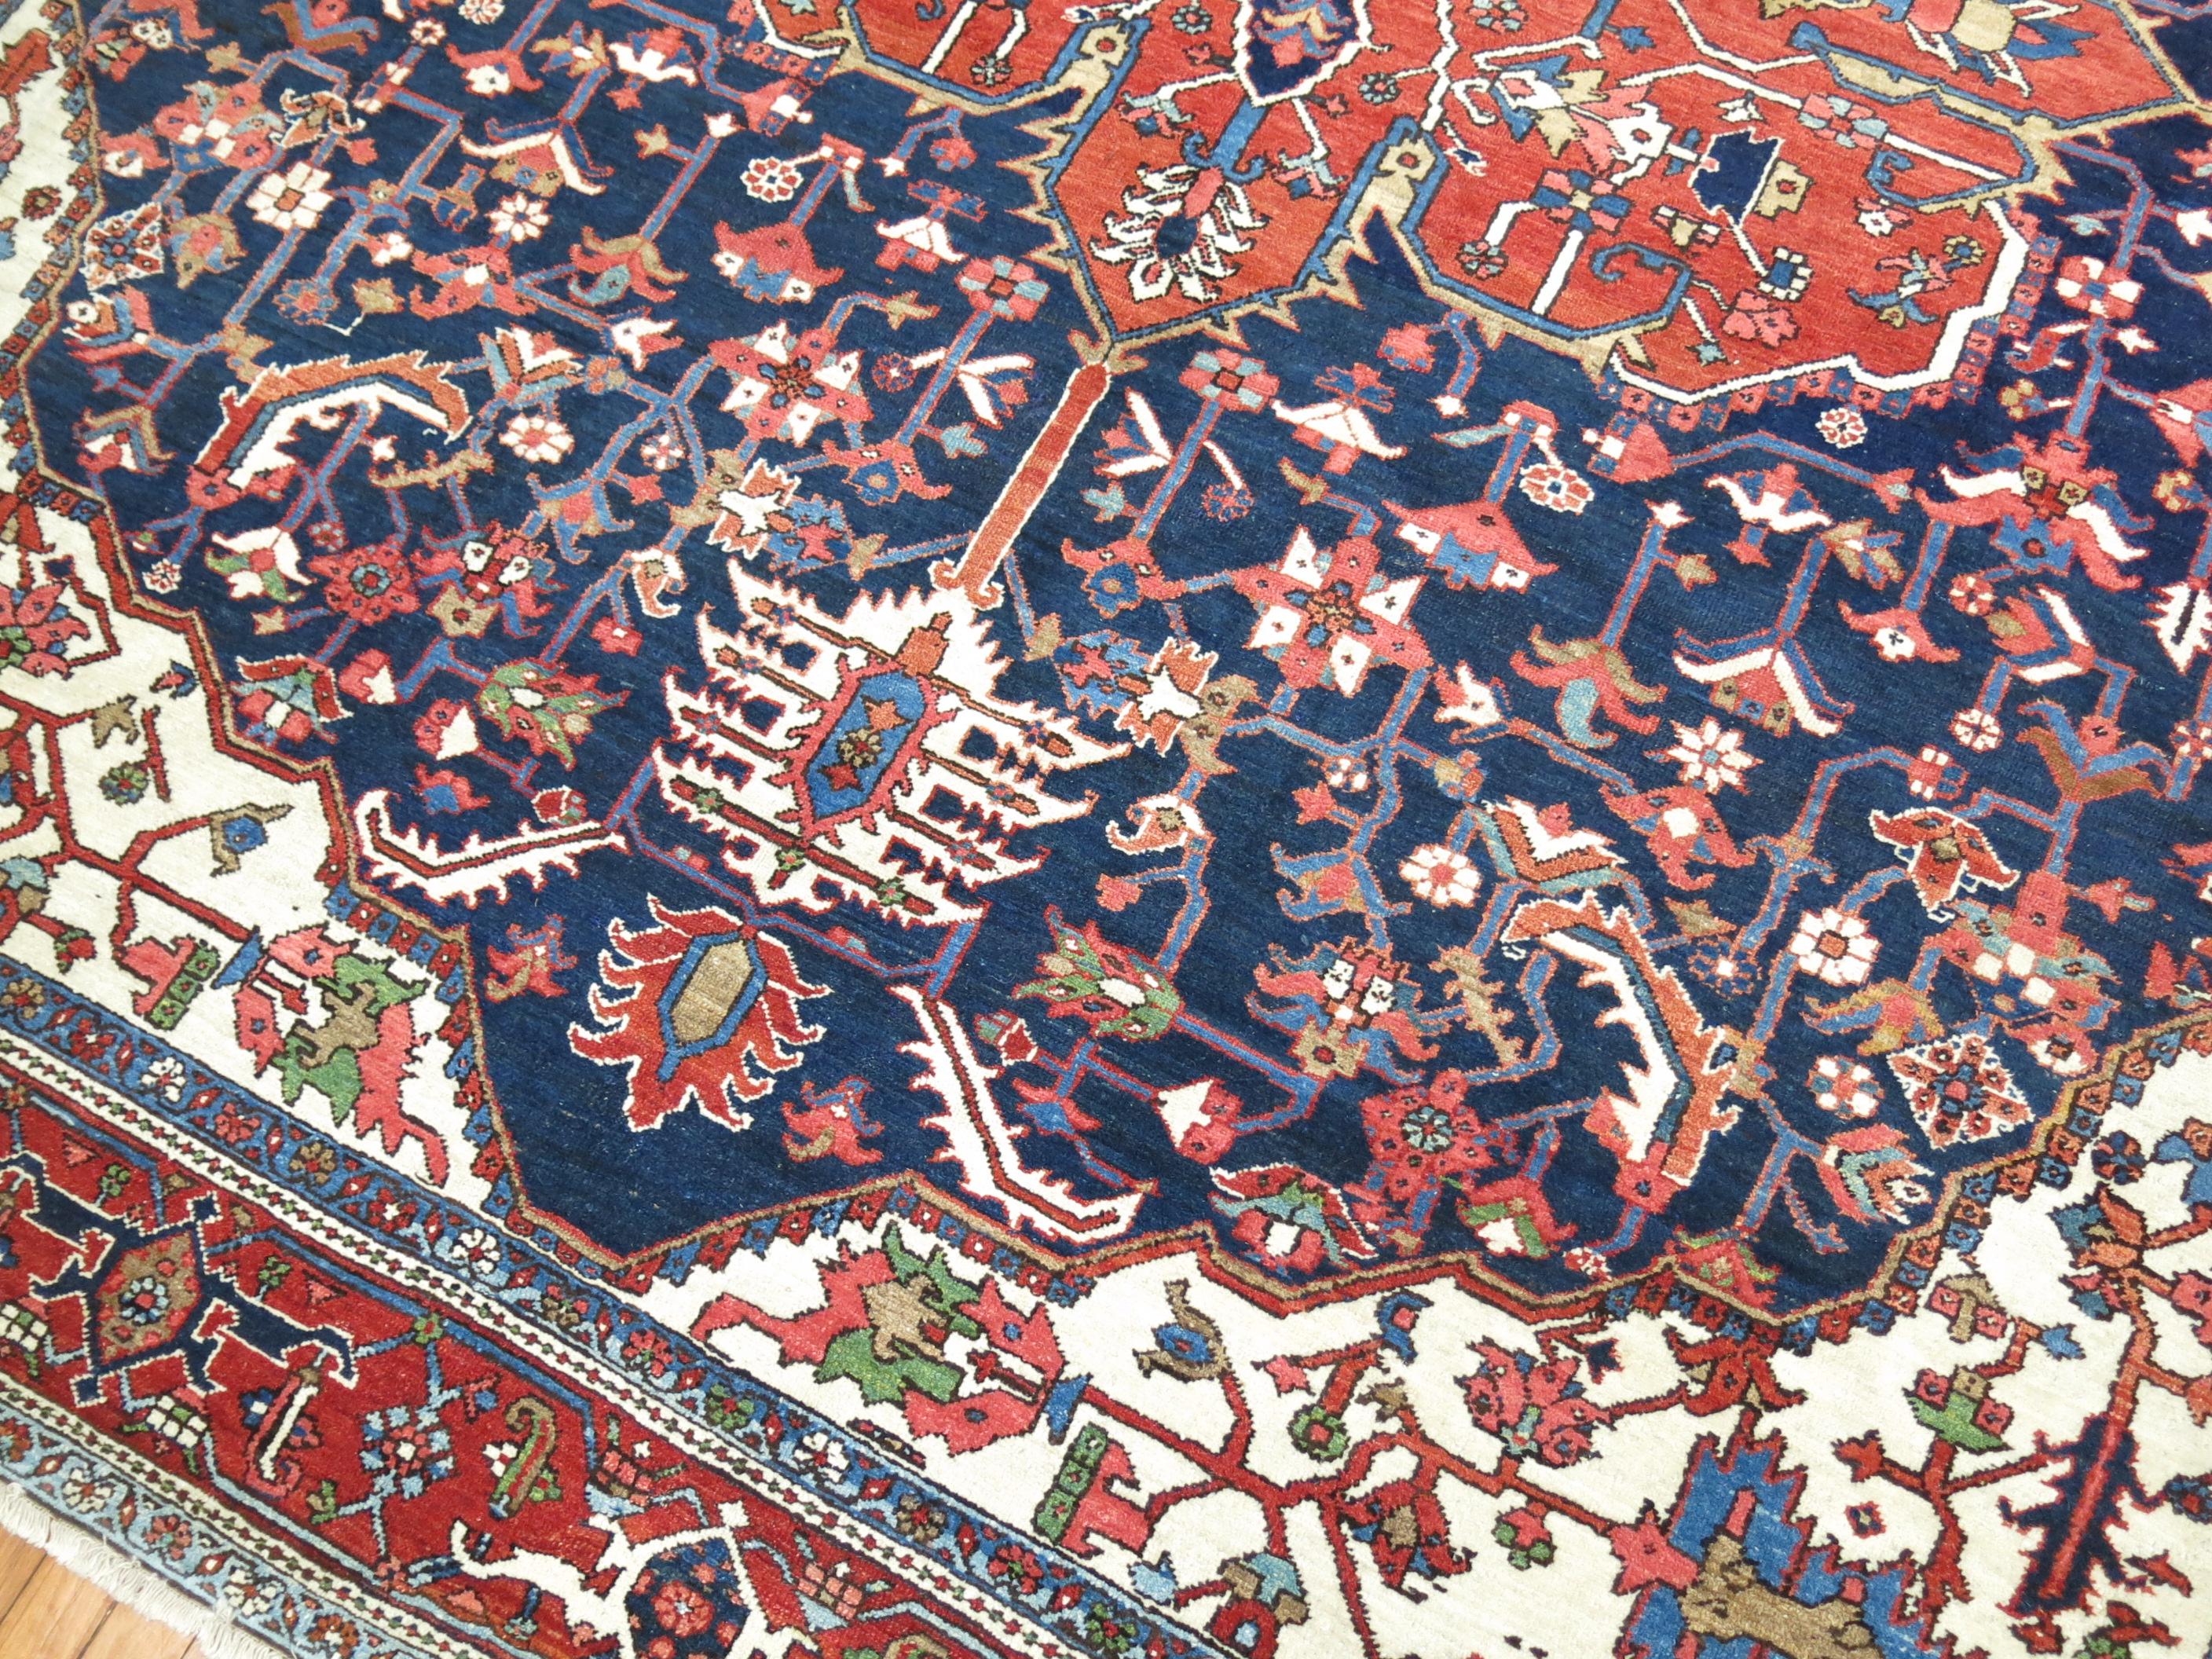 Ein traditioneller marineblauer und brauner Akzent aus dem frühen 20. Jahrhundert mit elfenbeinfarbenem Feld in Zimmergröße, ein persischer Heriz-Teppich.

Maße: 9' x 11'3